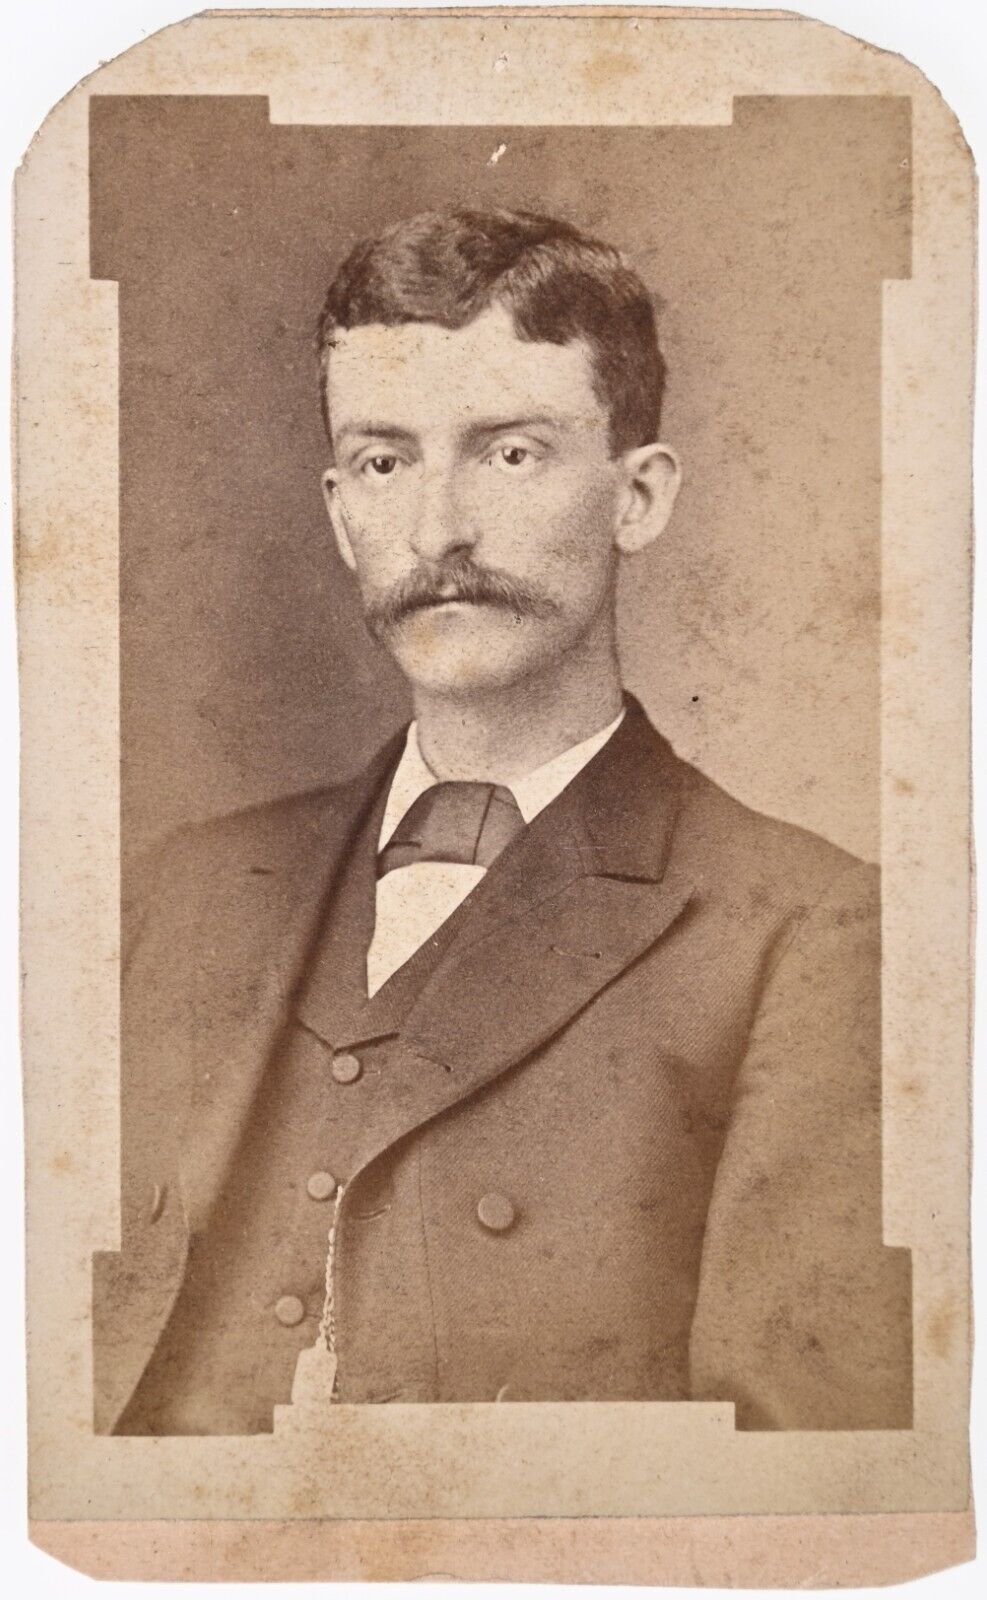 ANTIQUE CDV CIRCA 1880s SMITH HANDSOME MAN WITH MUSTACHE ZANESVILLE OHIO